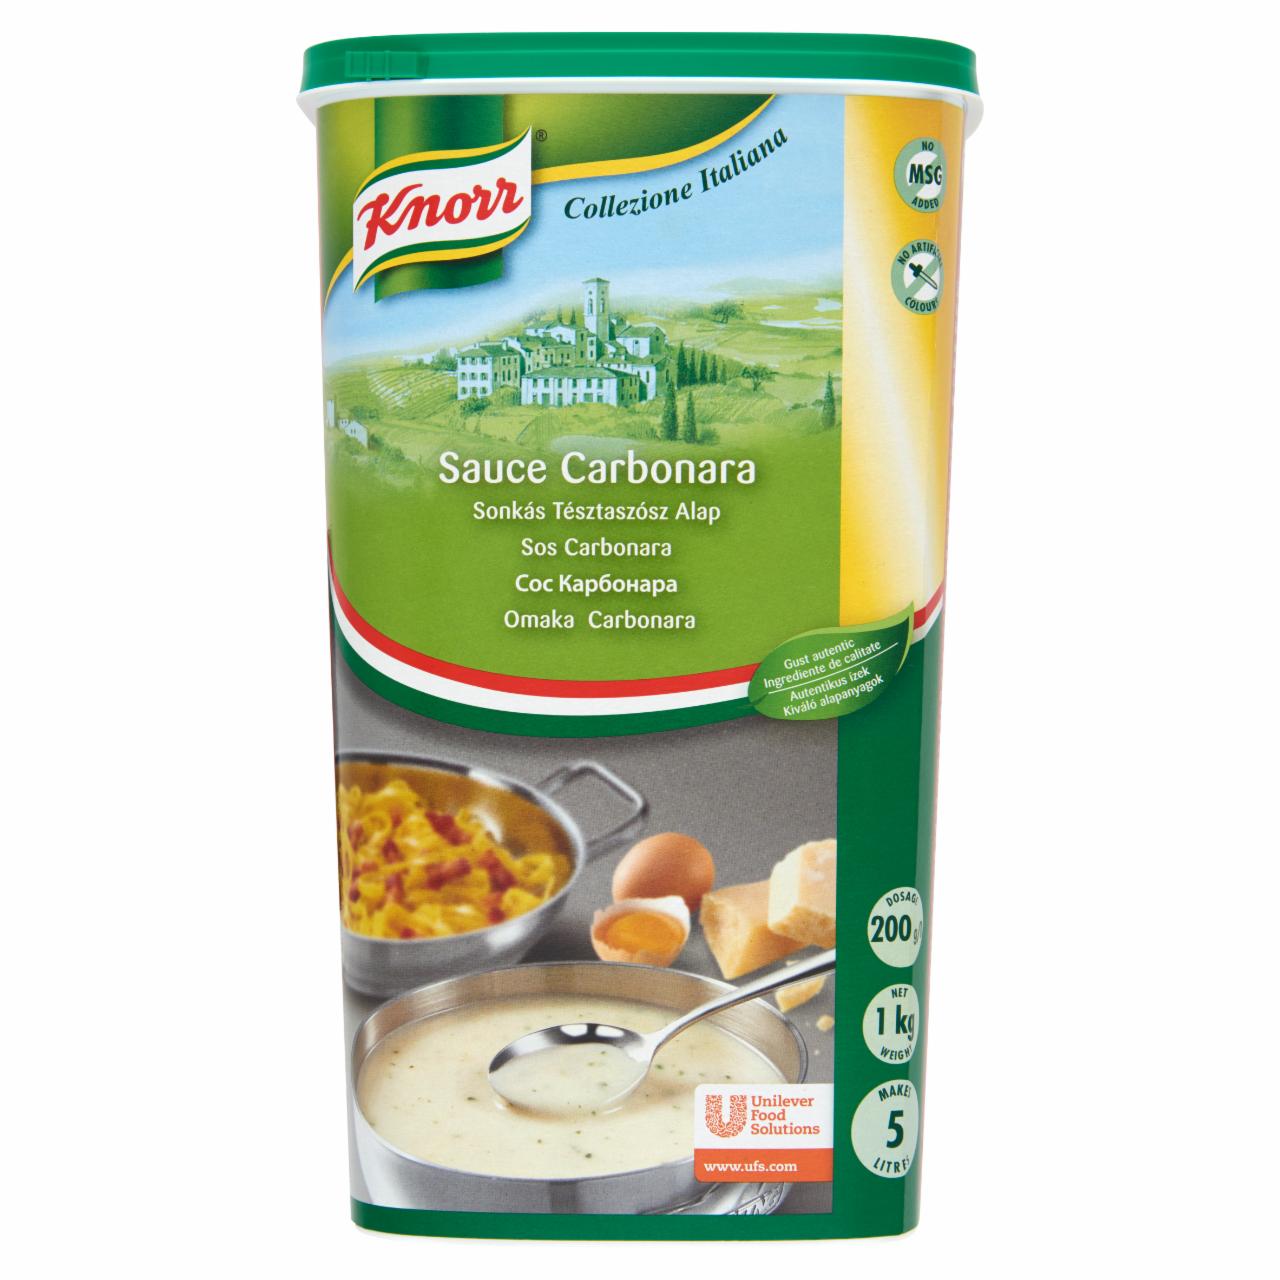 Képek - Knorr Carbonara sonkás tésztaszósz alap 1 kg